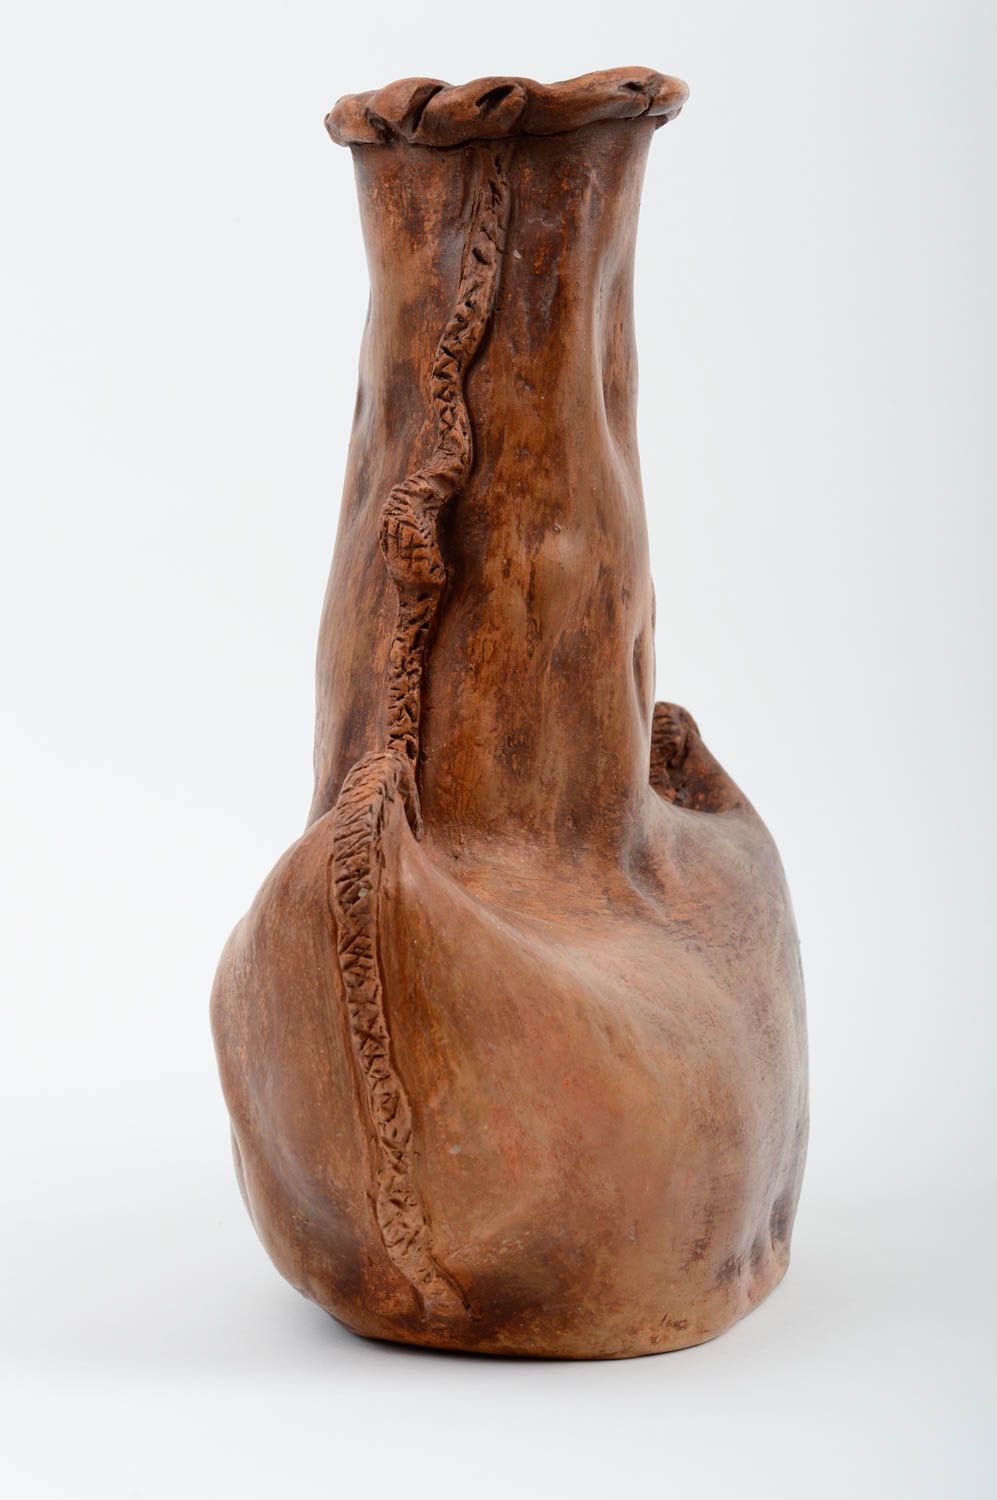 Art clay handmade flower vase for home décor 9, 1,63 lb photo 3